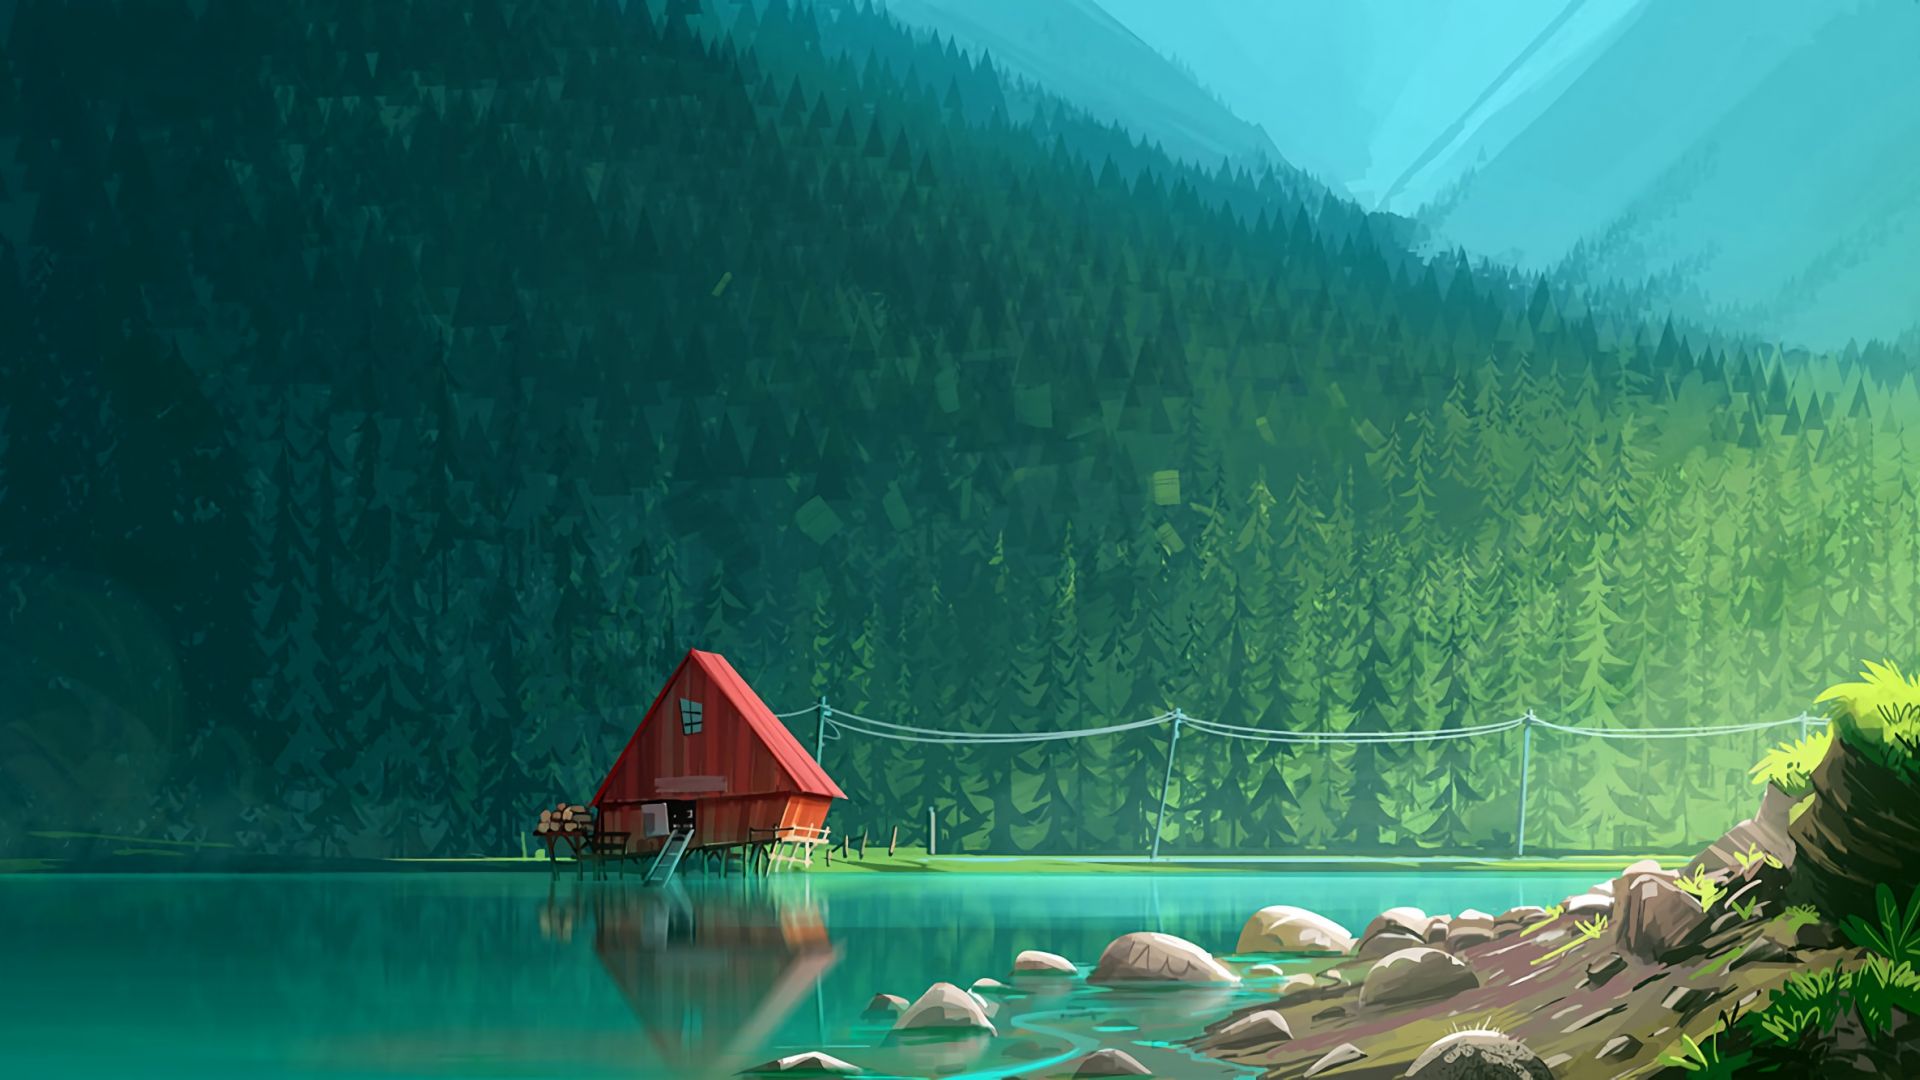 Wallpaper Illustration, artwork, house, lake, forest